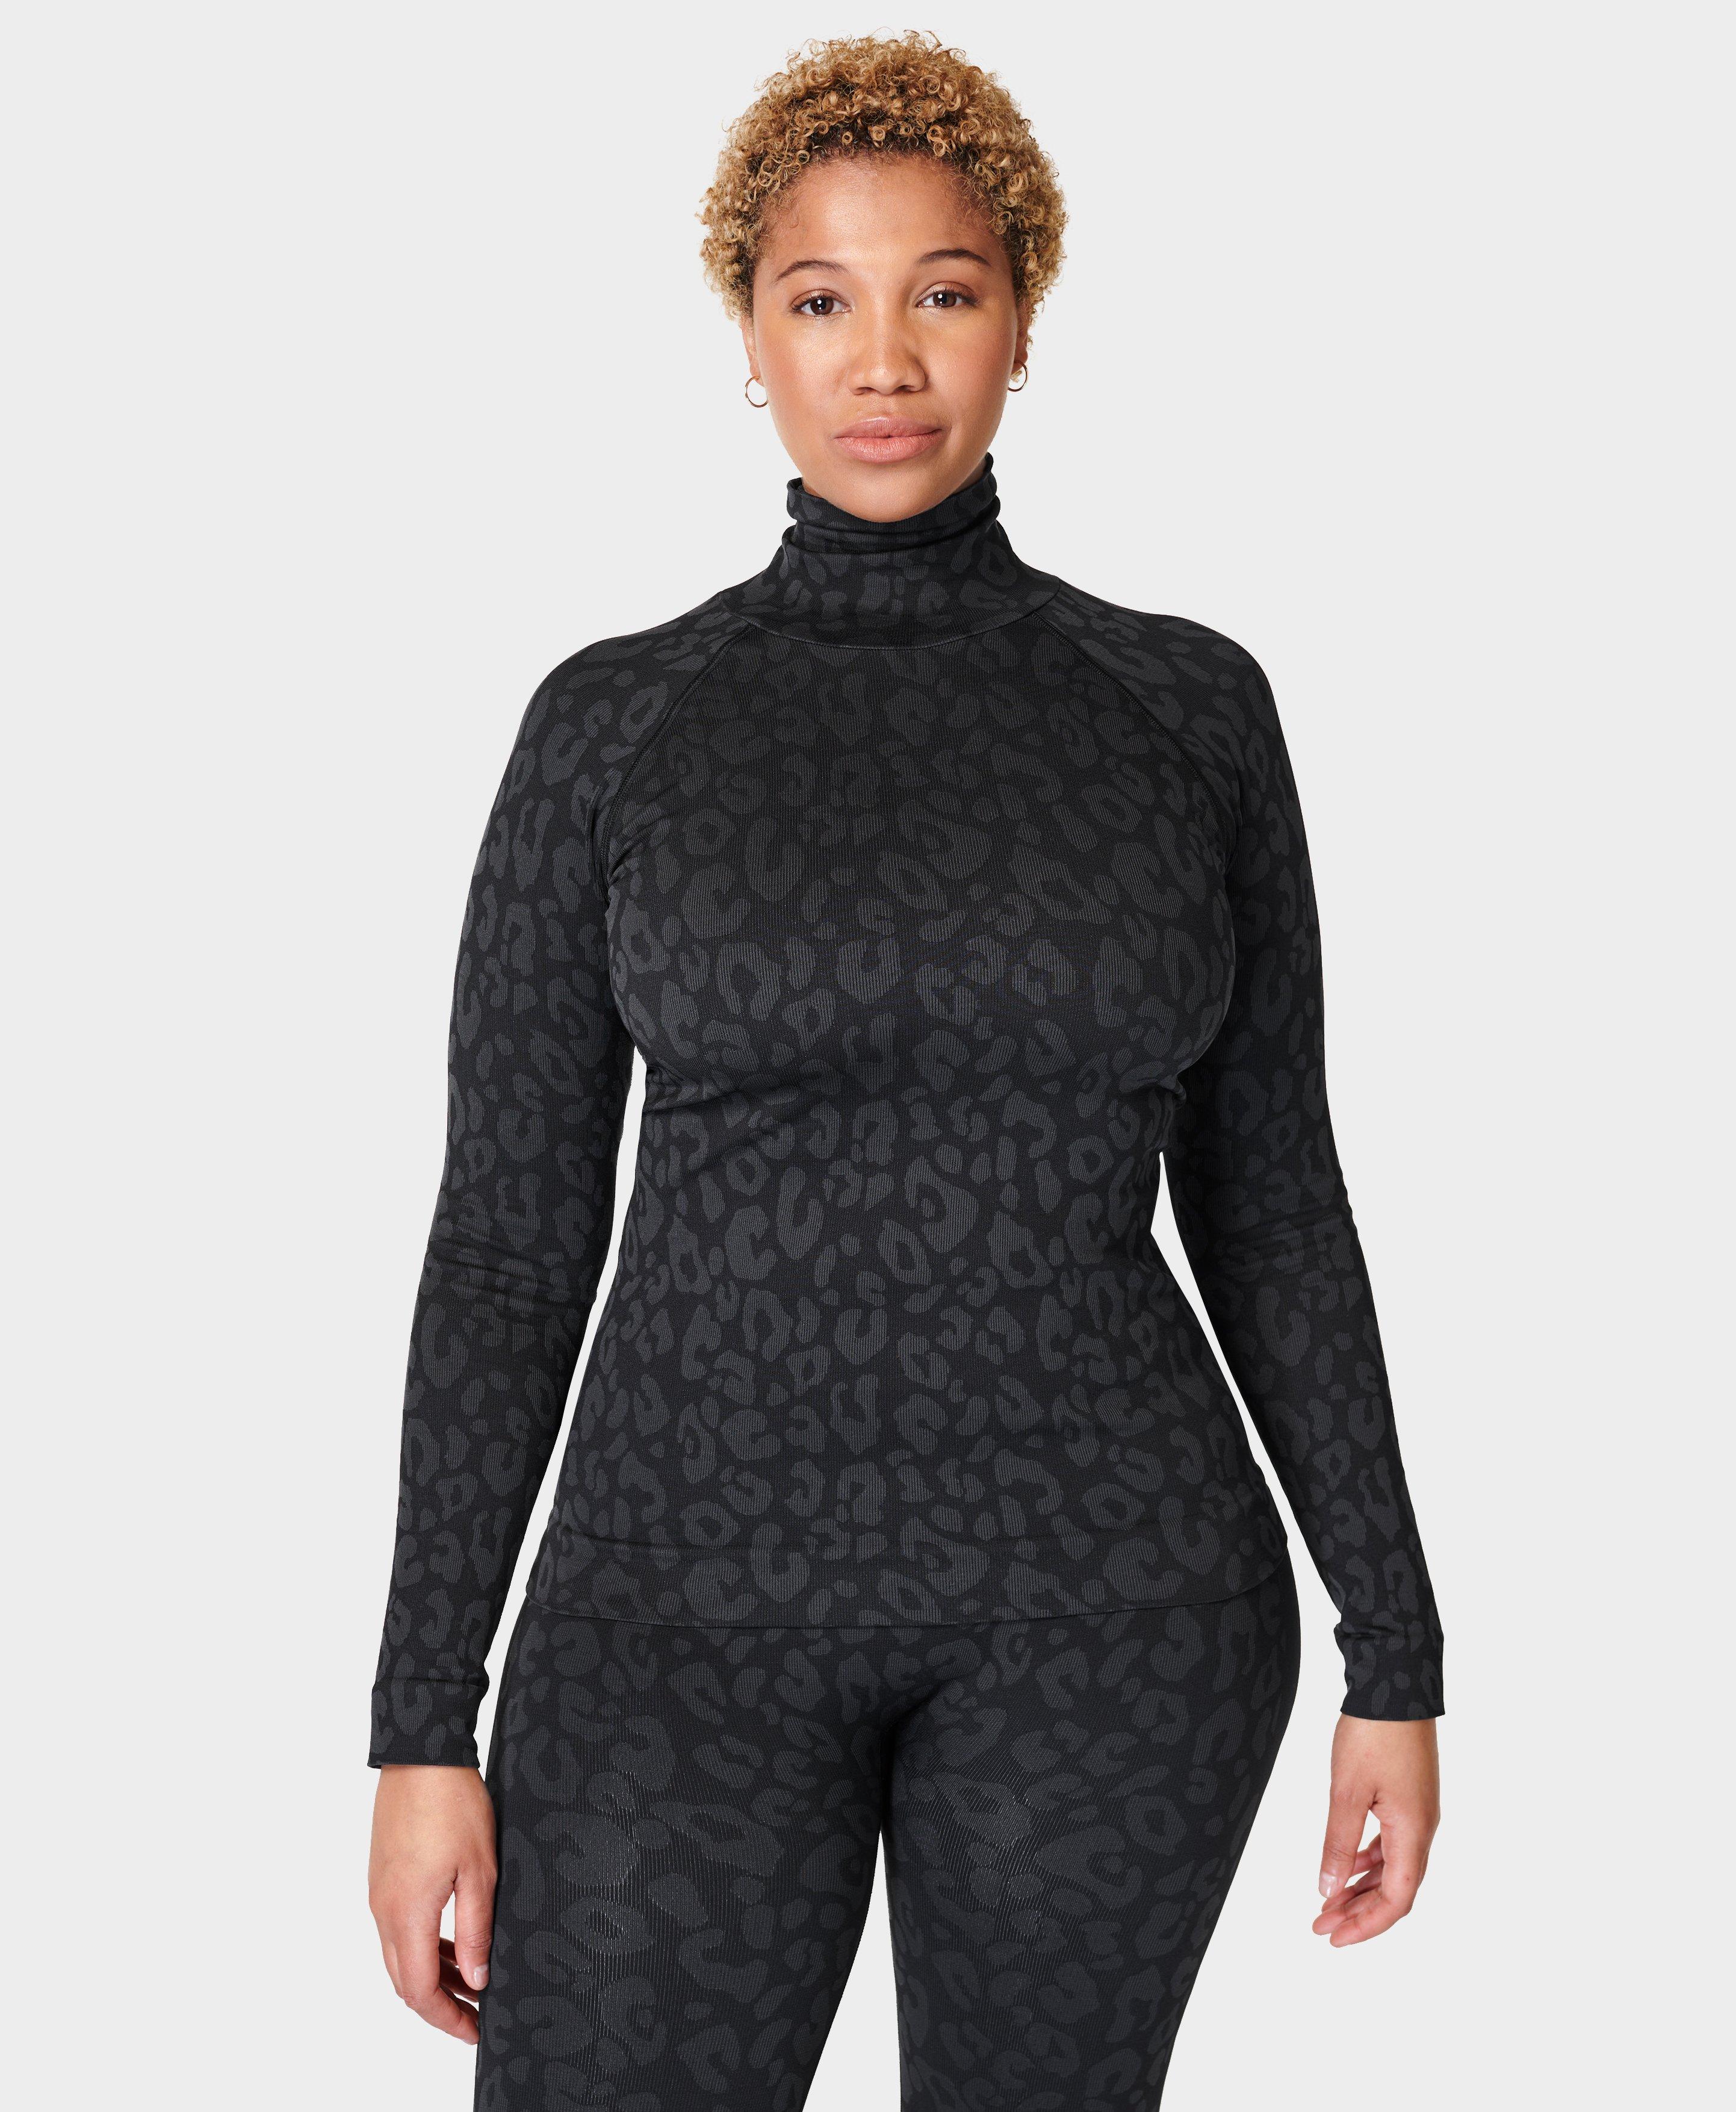 Modal Dot High Neck Jacquard Base Layer Top - Black, Women's Ski Clothes